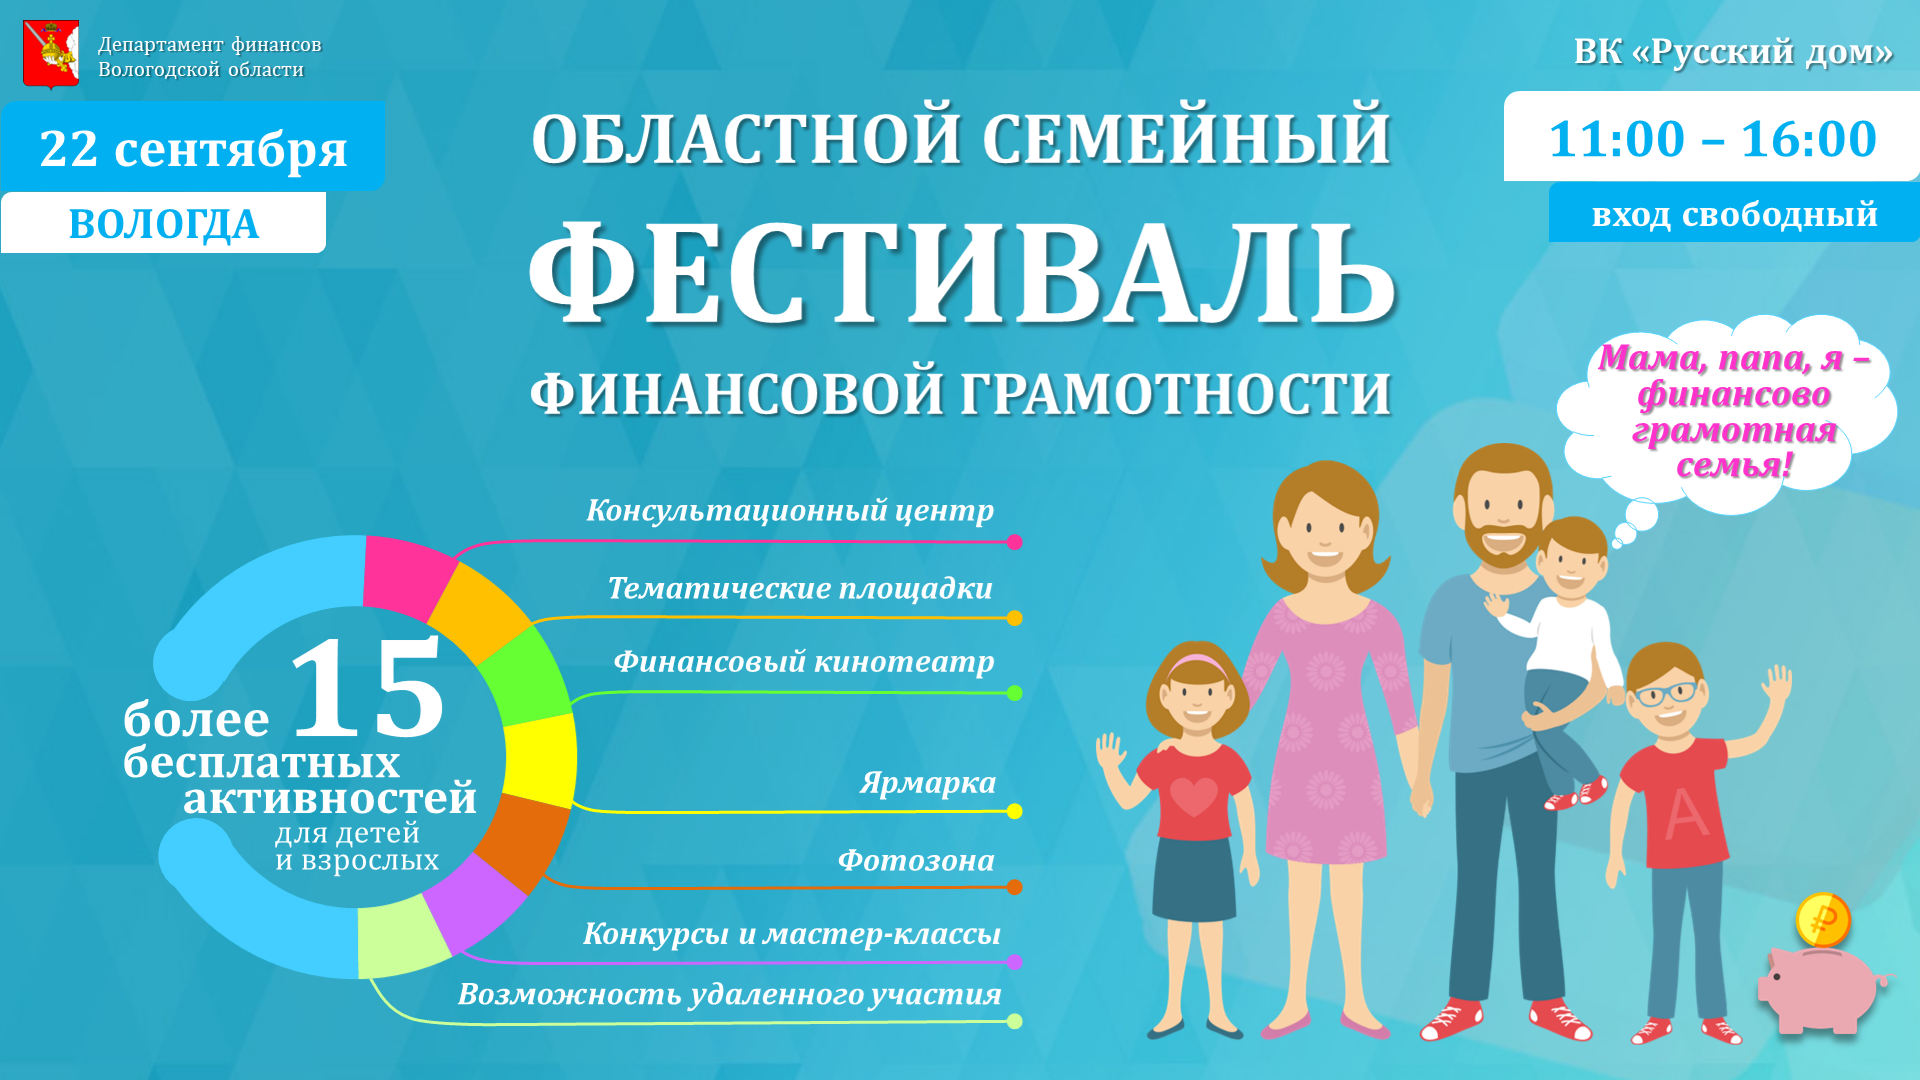 Первый областной семейный фестиваль финансовой грамотности состоится на Вологодчине в сентябре.